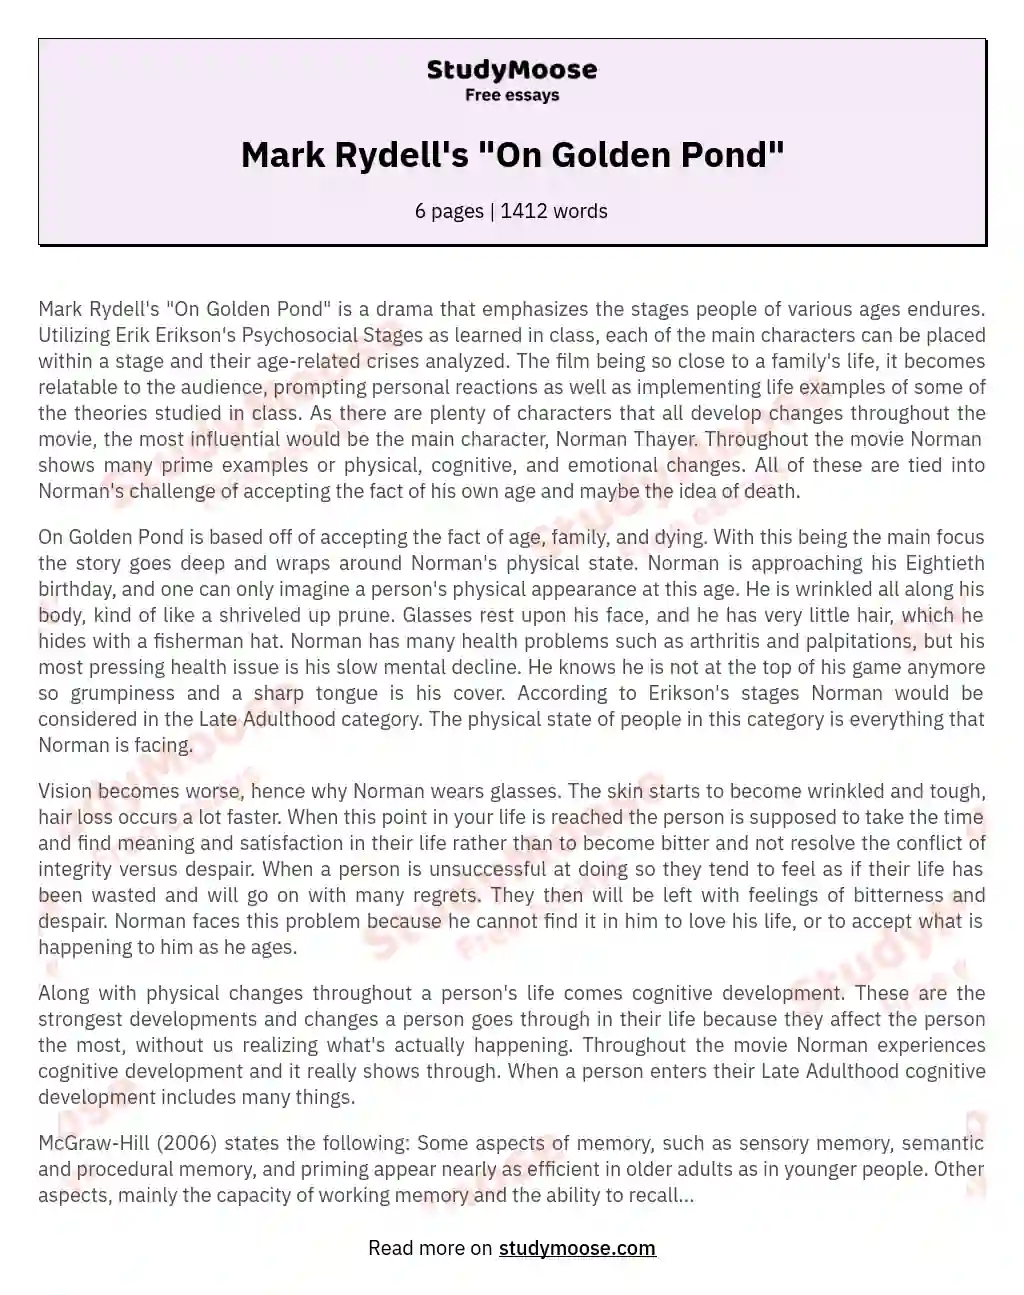 Mark Rydell's "On Golden Pond" essay